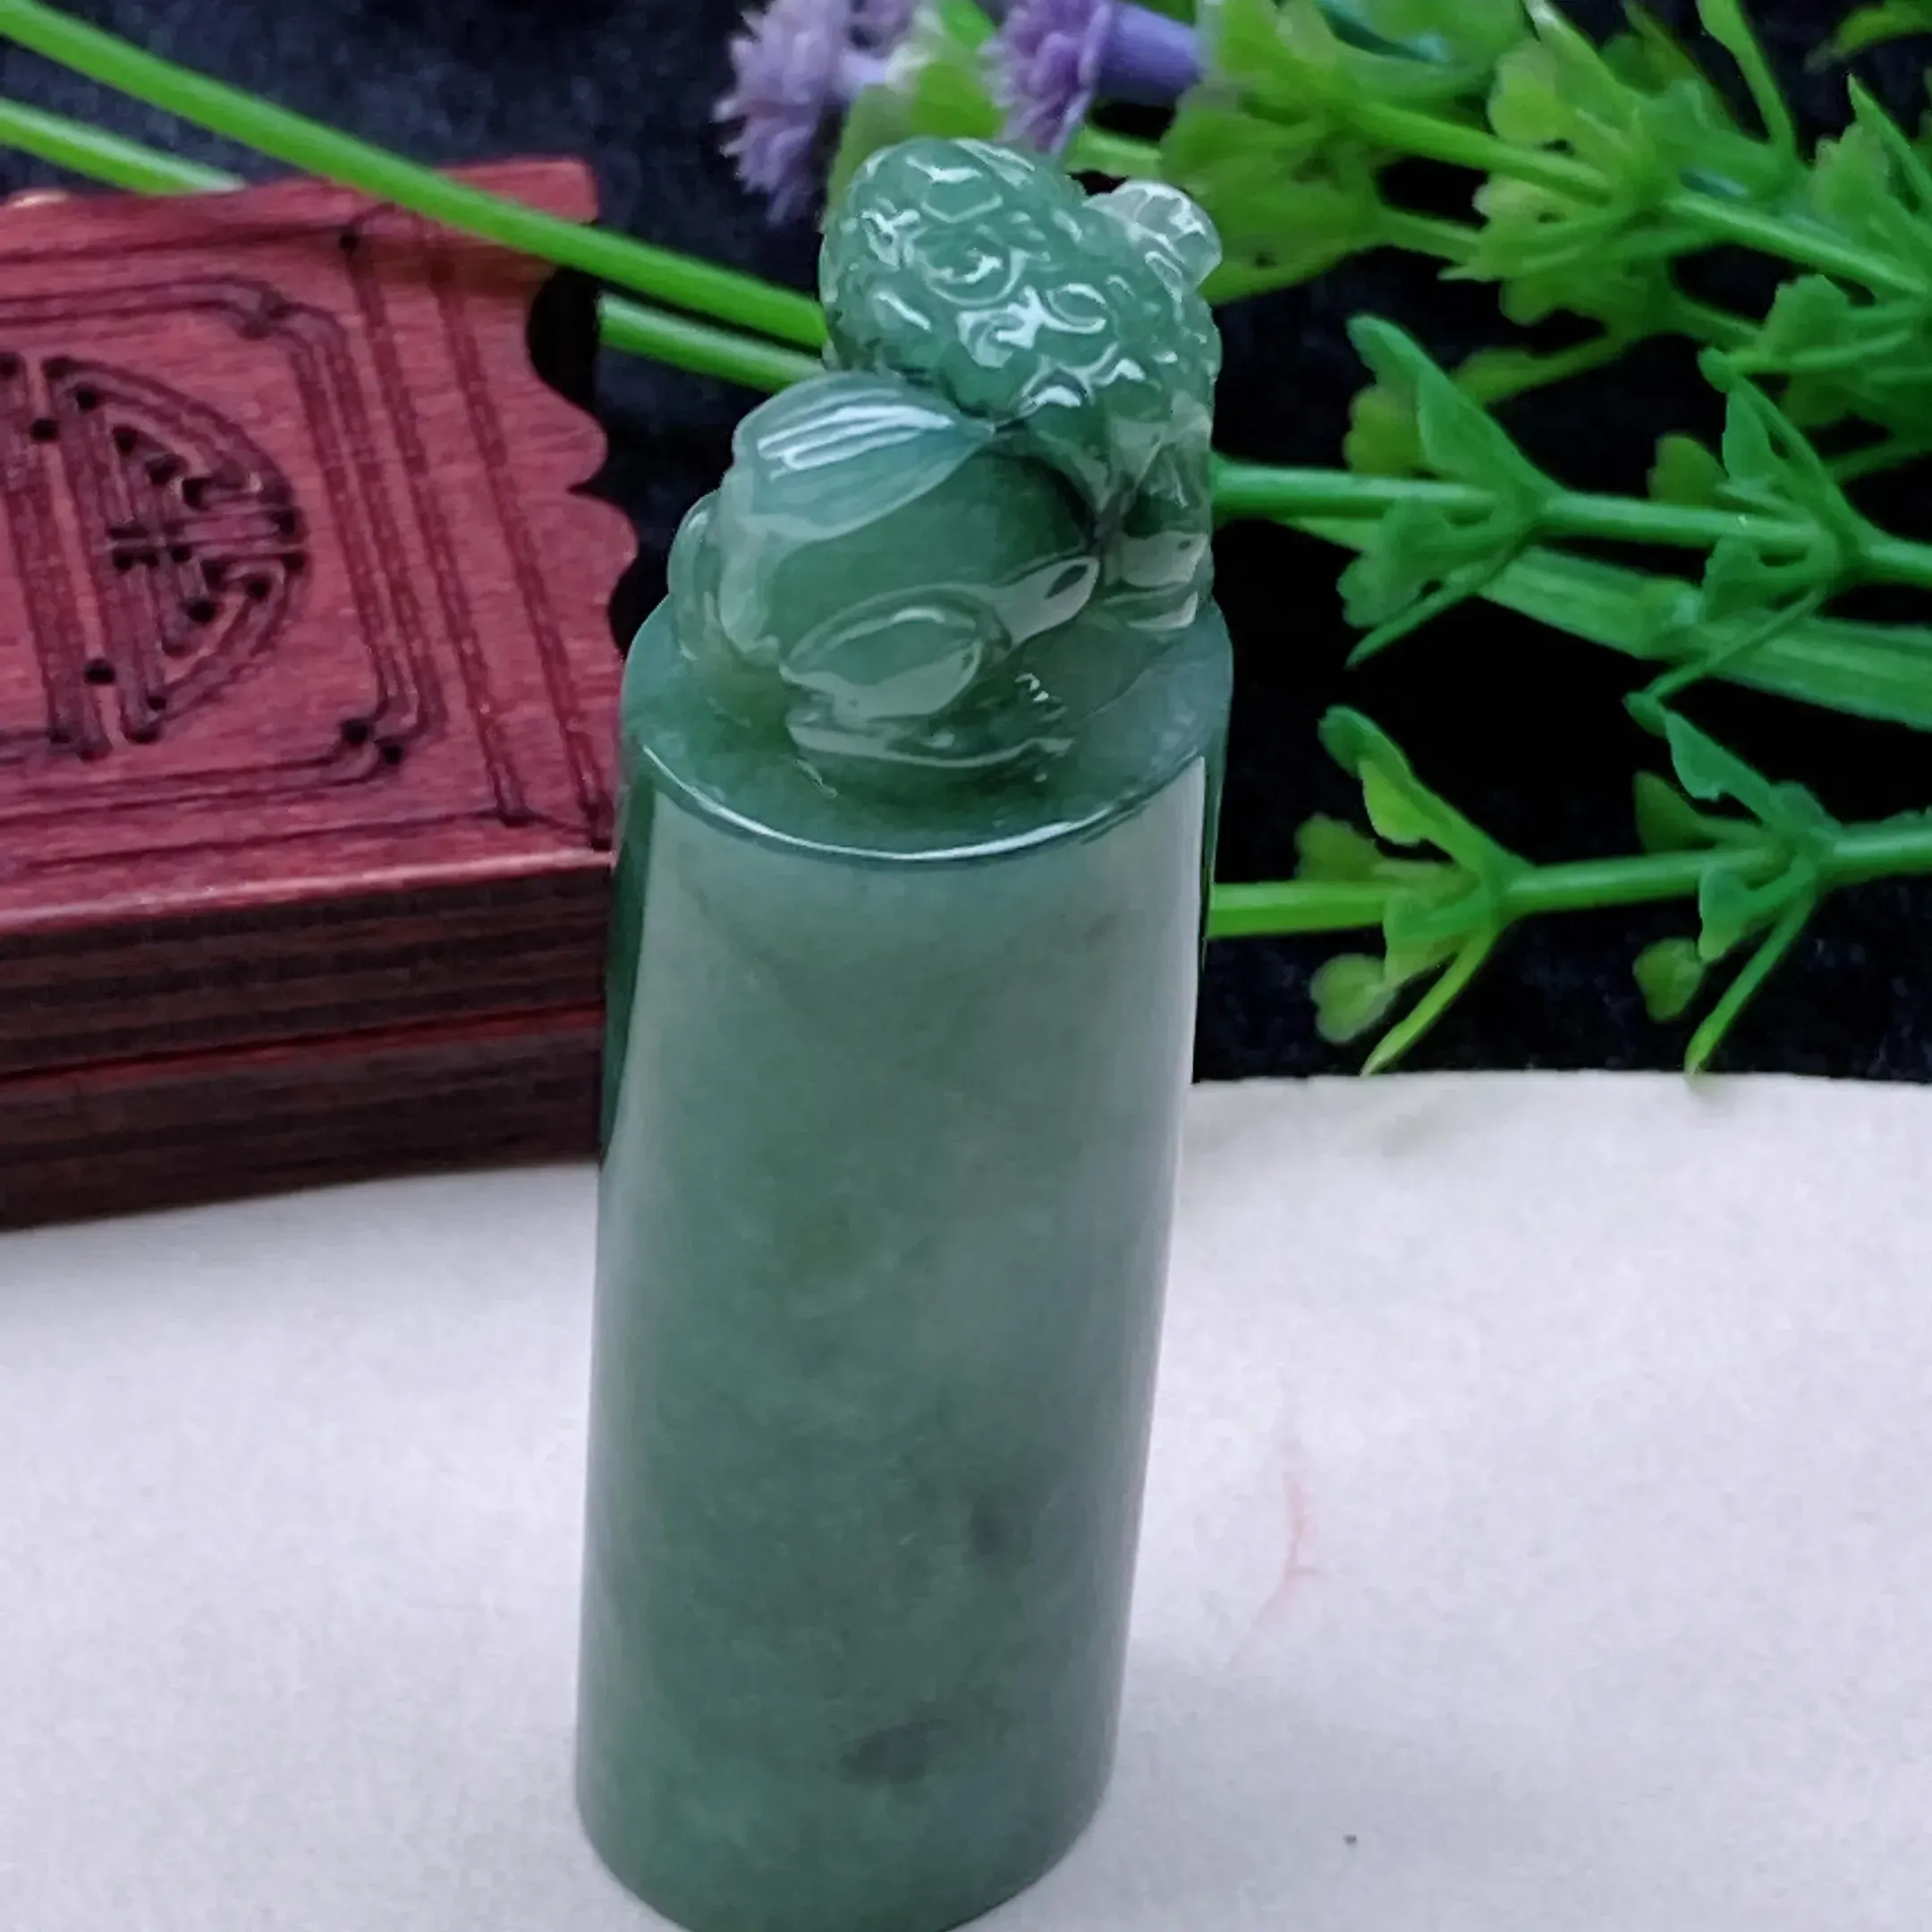 自然光实拍  水润精工冰透满绿貔貅印章。玉质细腻莹润 雕工精湛，佩戴高雅大方   线条优美  尺寸:  56/14.5/16.8mm。